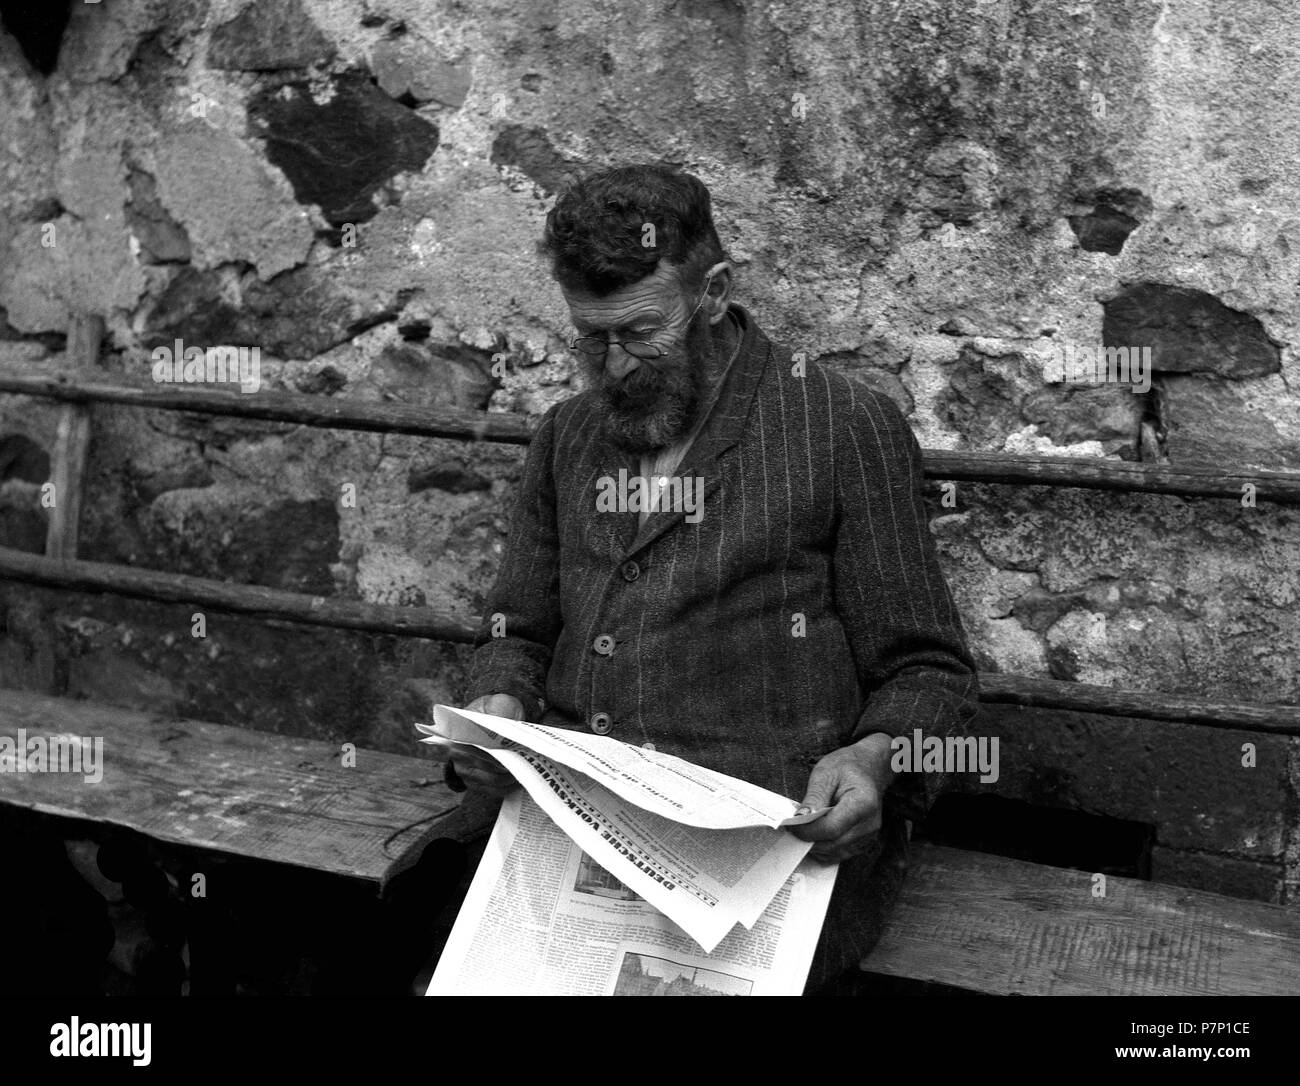 Lecteur de journaux, ca. 1955, Freiburg, Allemagne Banque D'Images